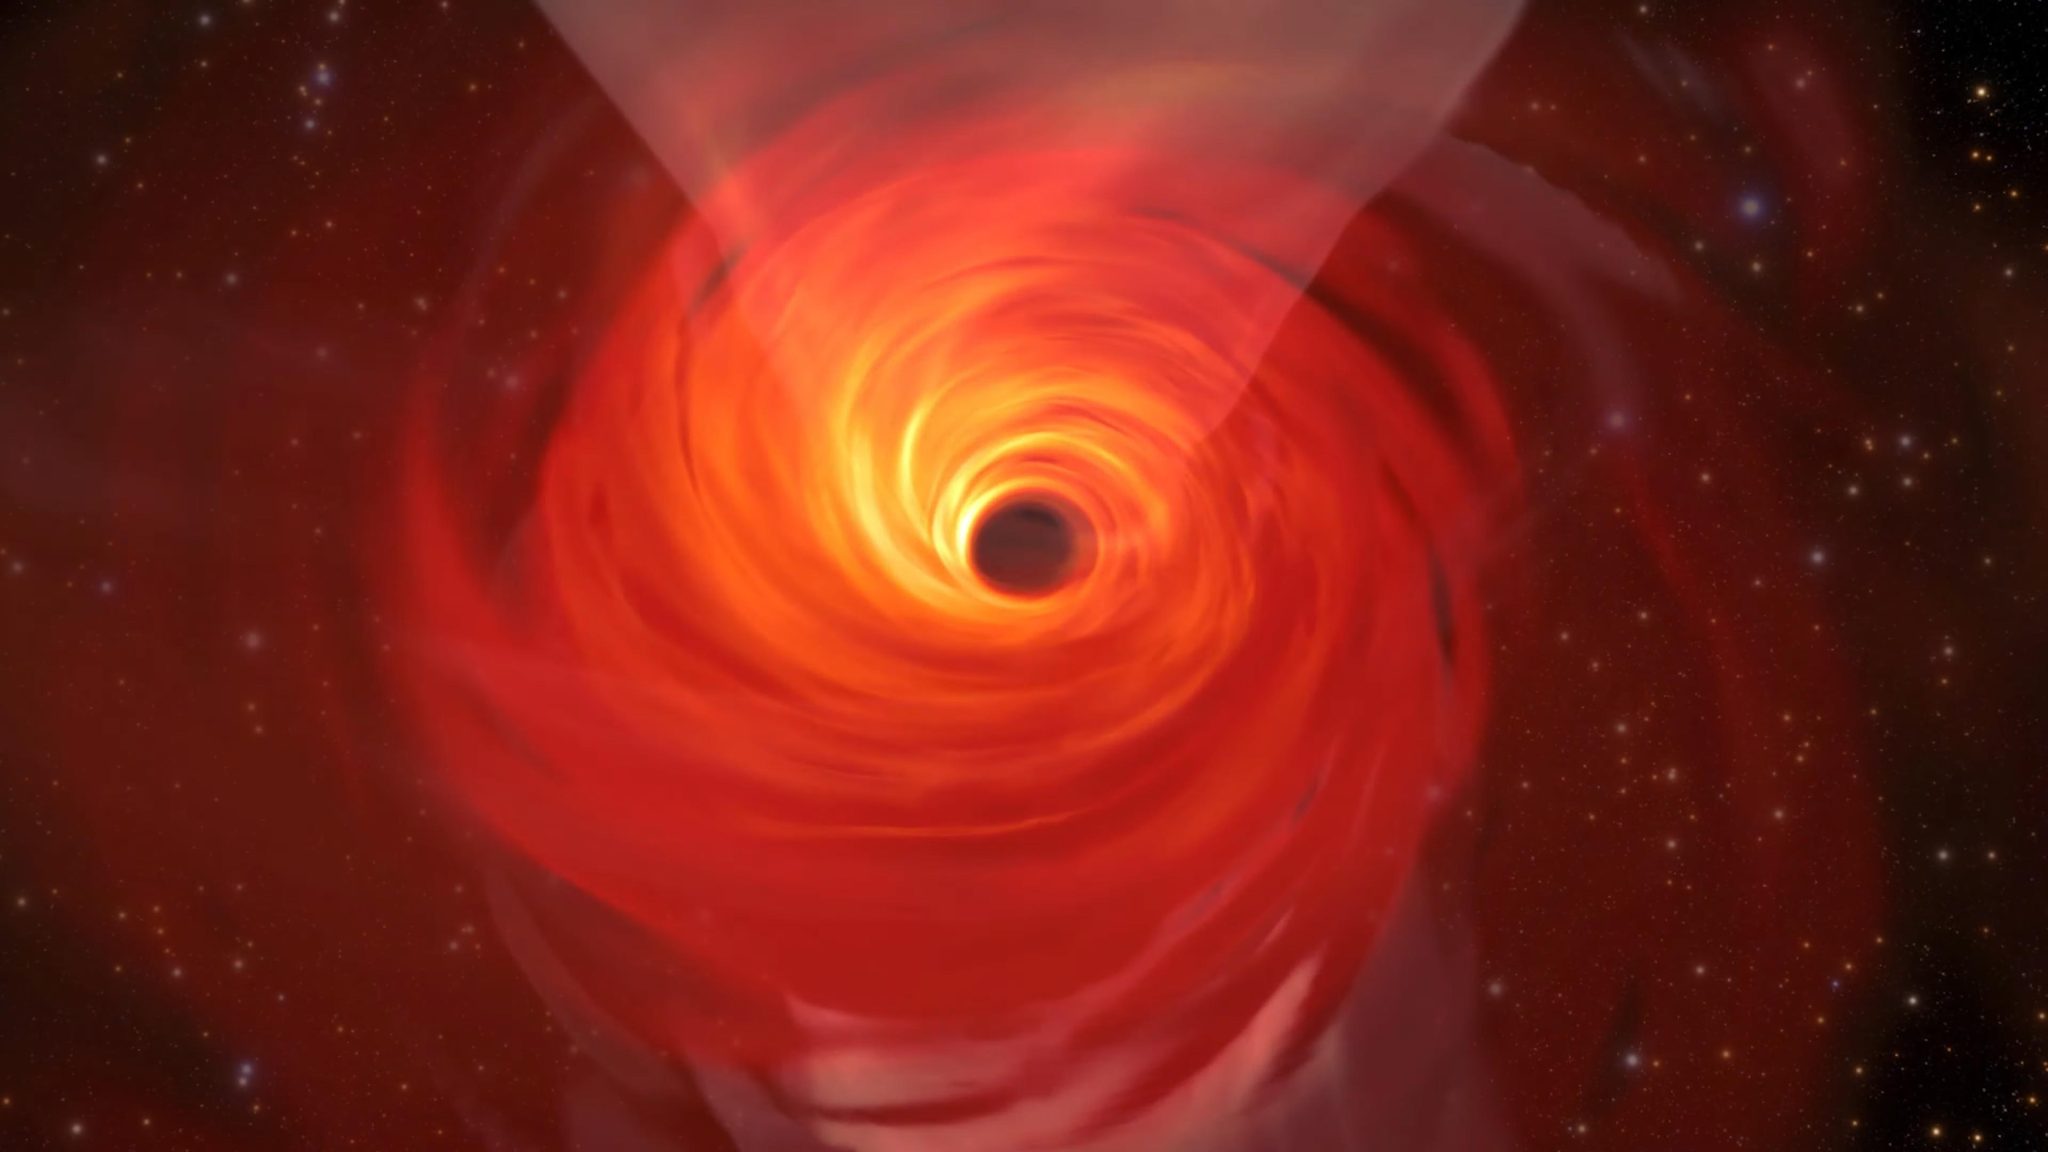 Se ha detectado una burbuja ‘impresionante’ de gas caliente zigzagueando alrededor del agujero negro supermasivo de la Vía Láctea